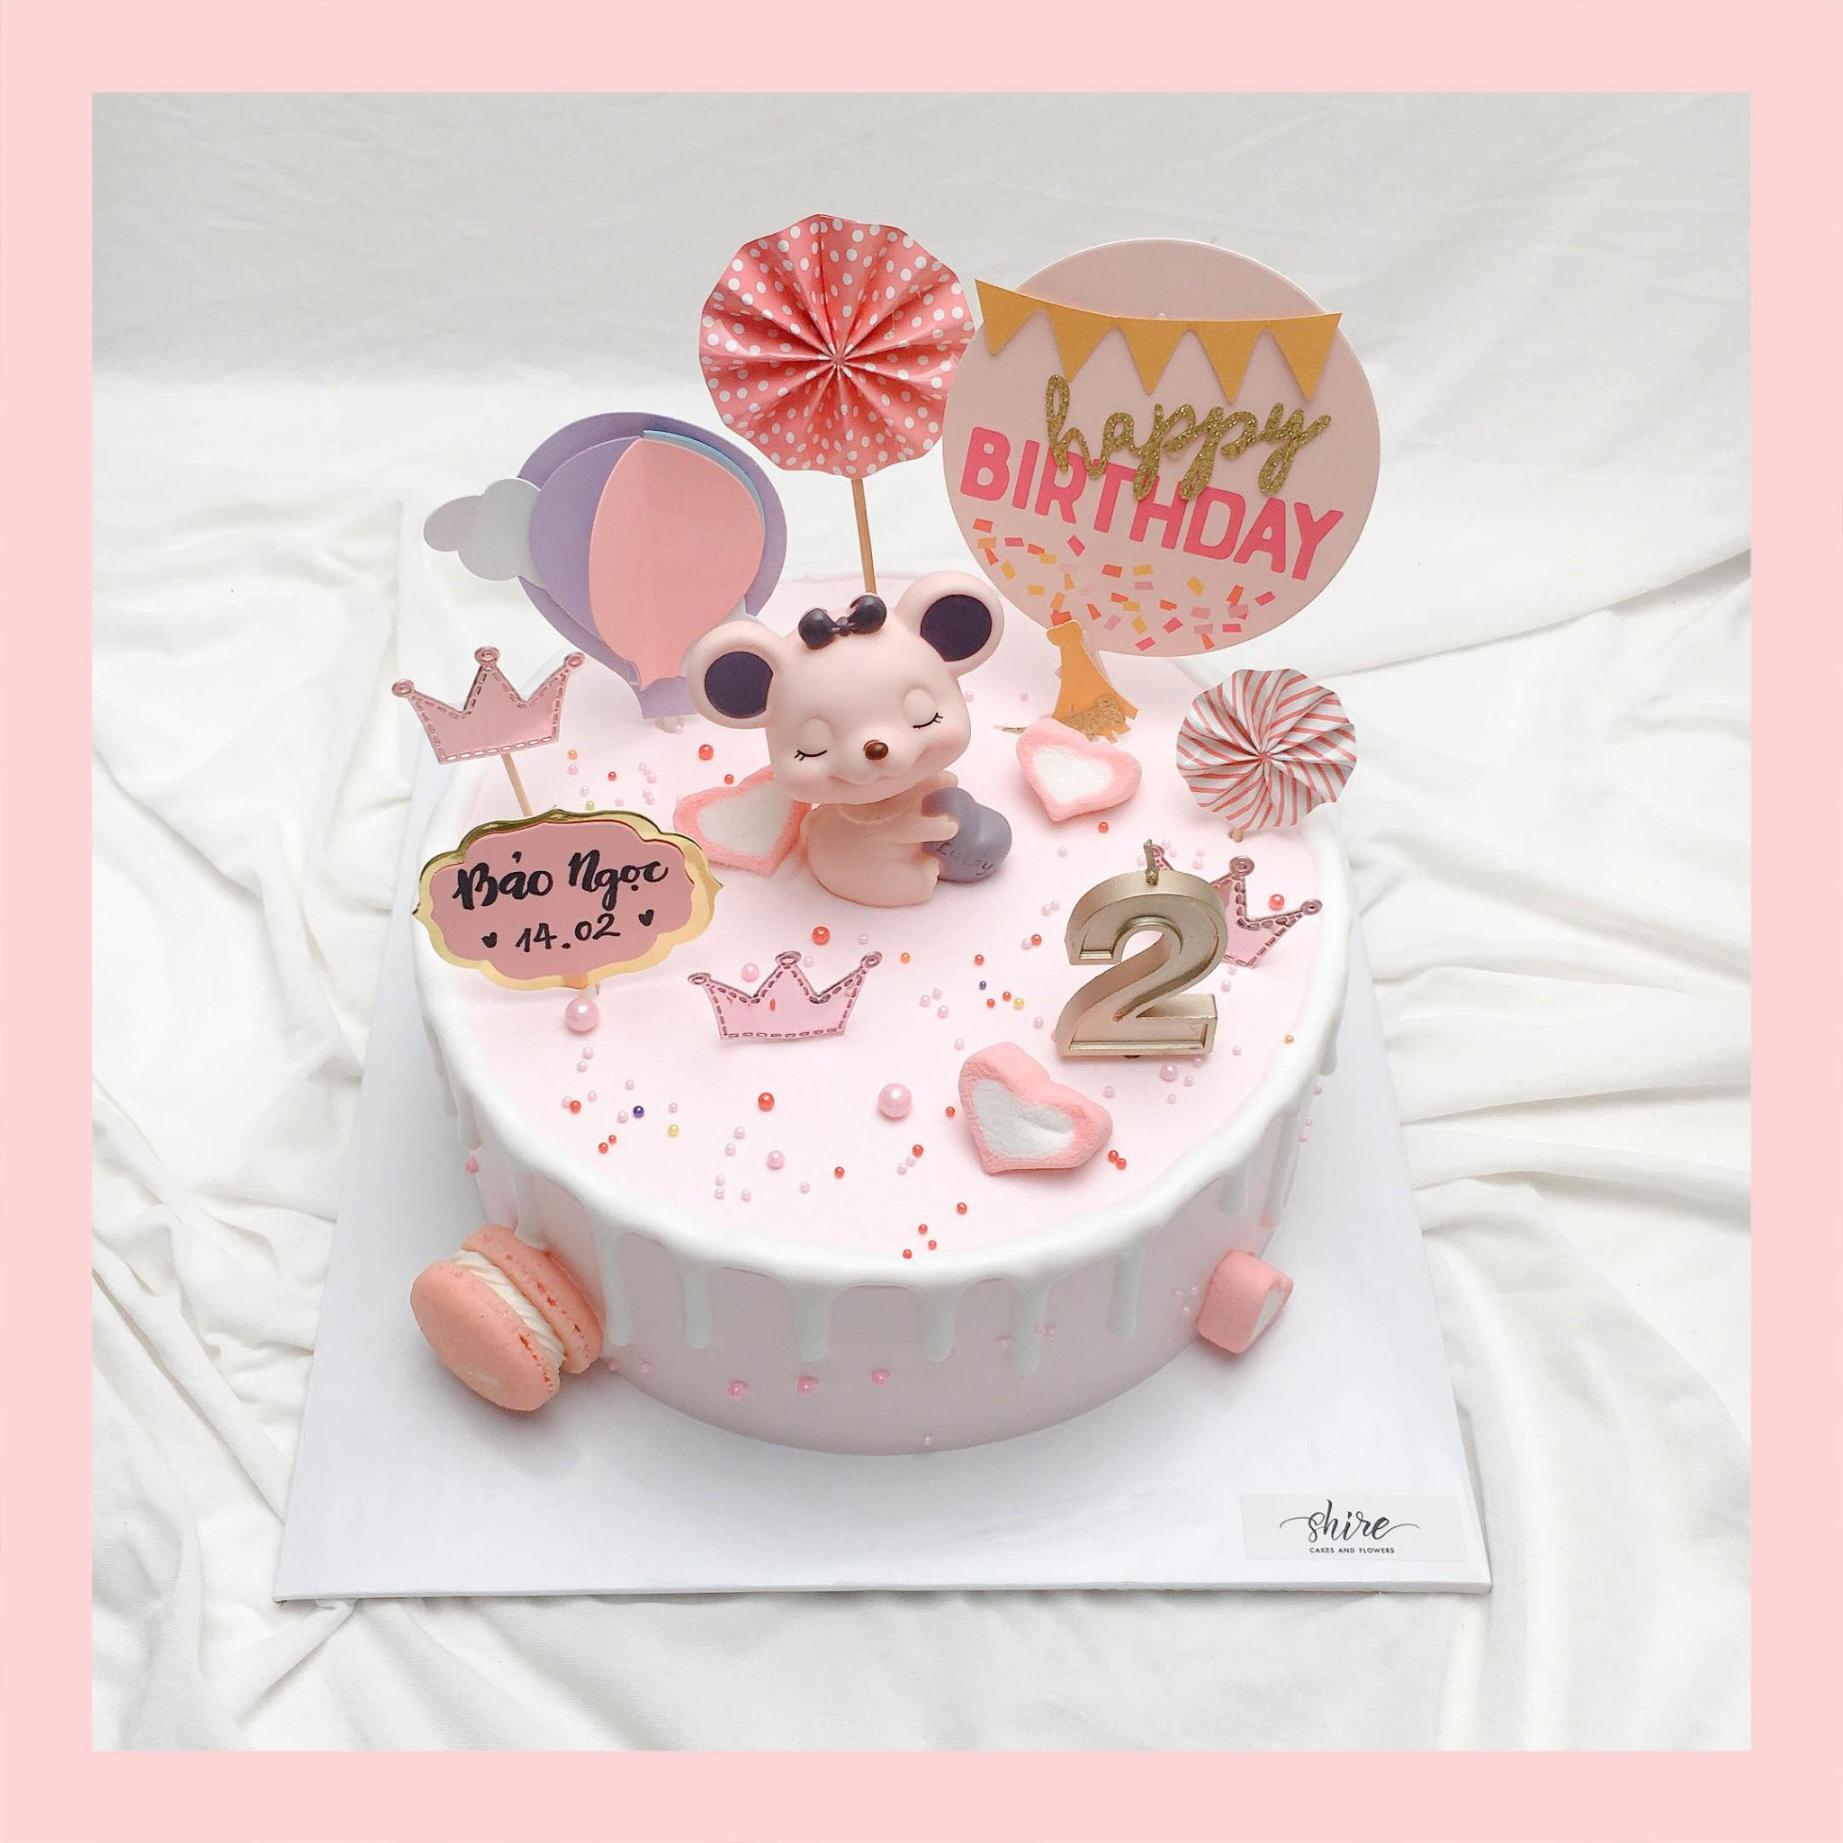 Tuyển chọn 999+ mẫu bánh sinh nhật 2 tầng đẹp cho bé gái với nhiều hình  dáng và màu sắc dễ thương